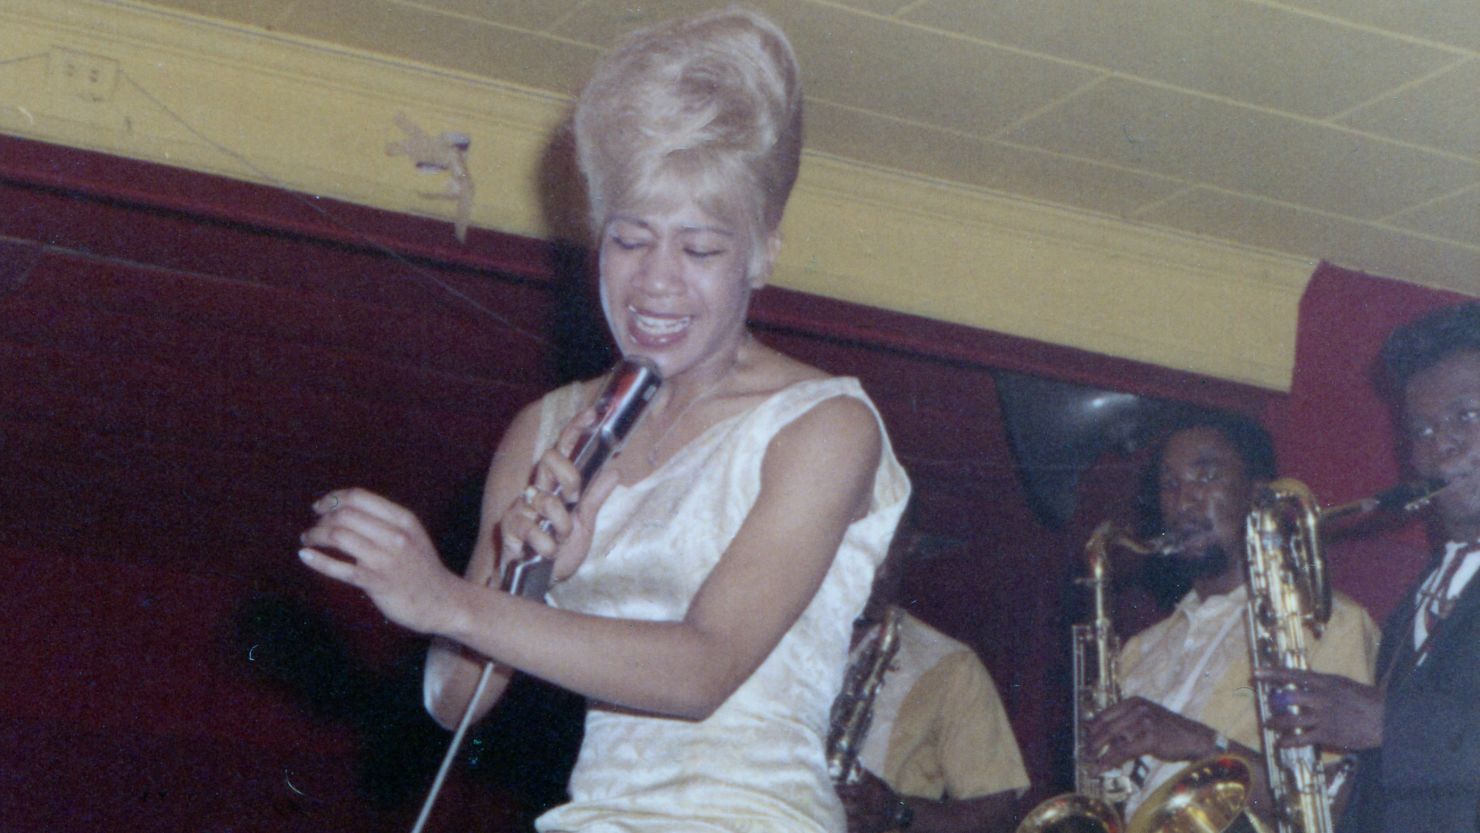 Bettye LaVette performs at Atlanta's Royal Peacock in 1965.